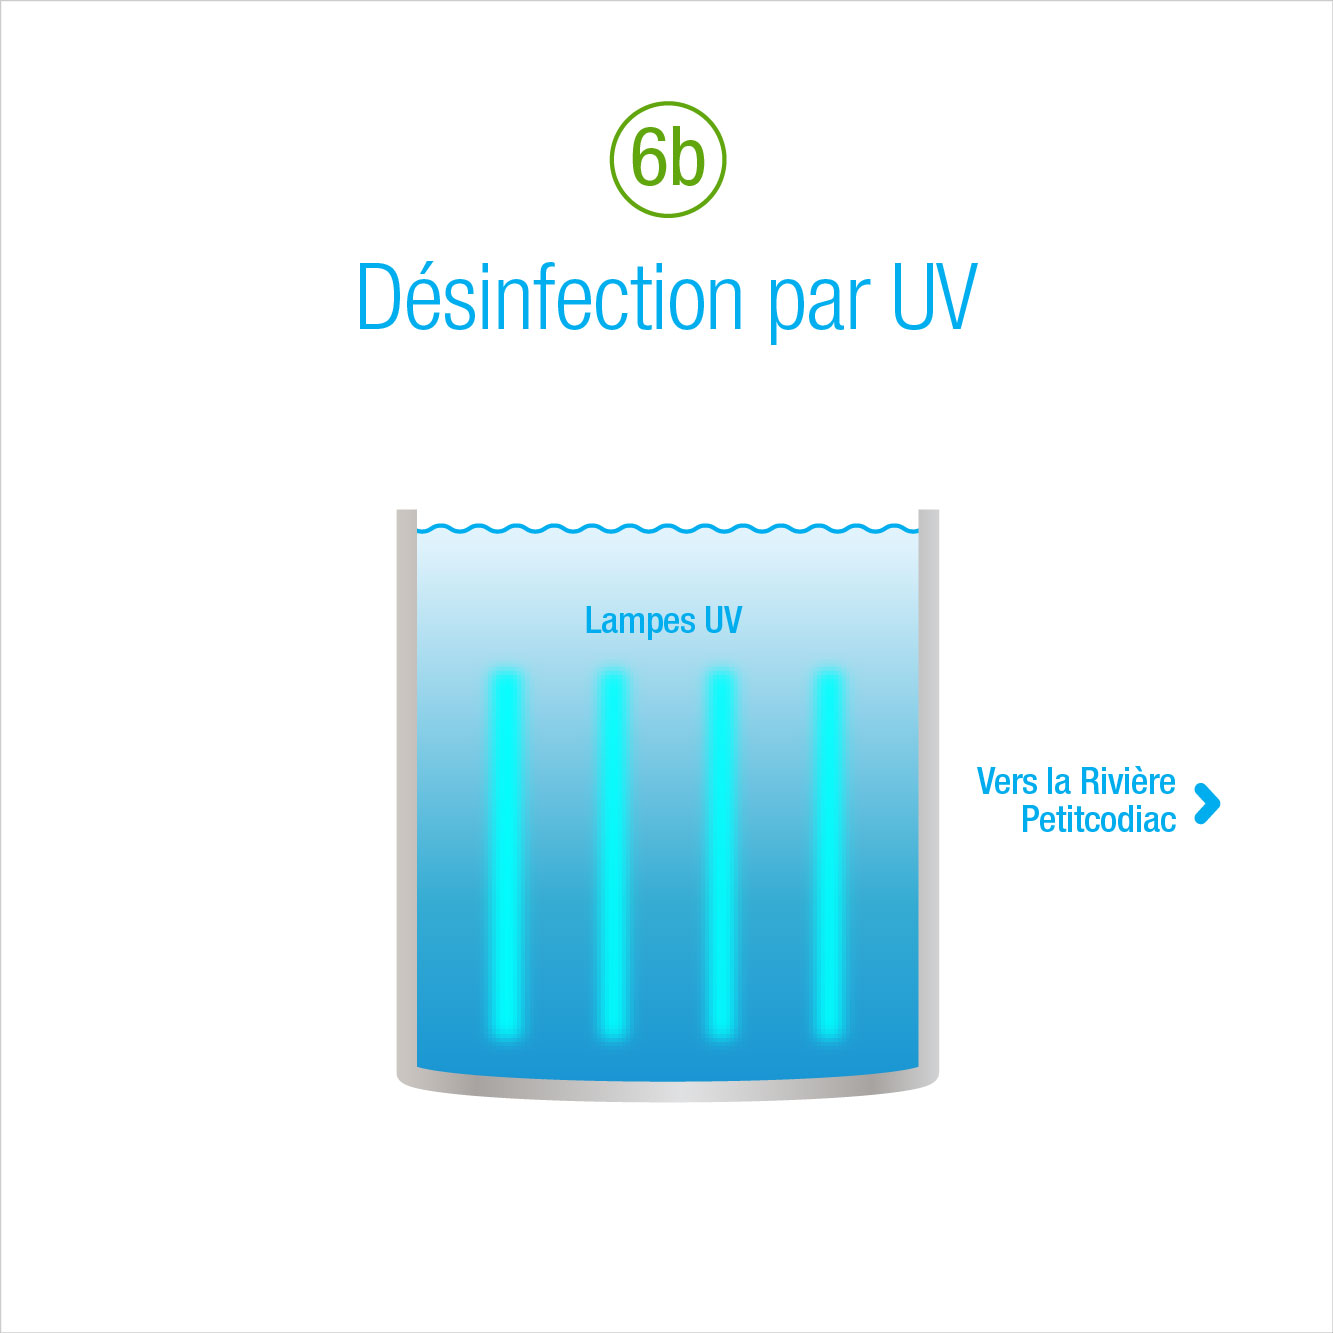 6b: Désinfection par UV